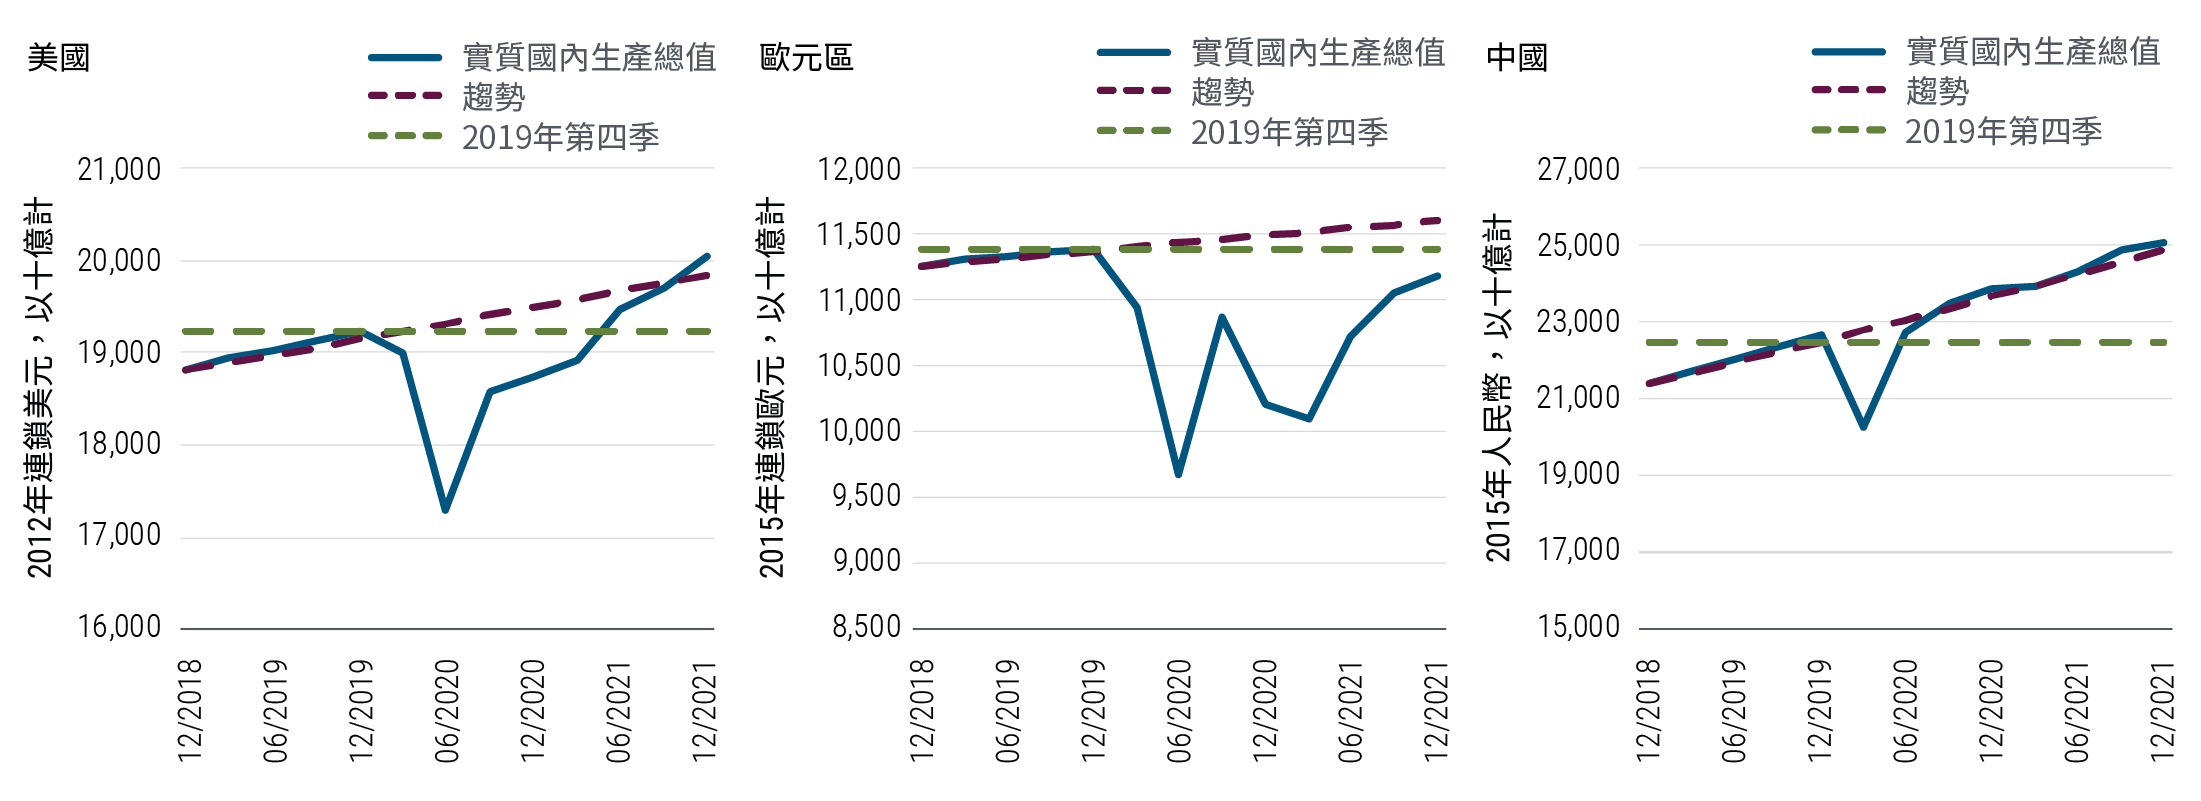 圖1顯示美國、歐元區和中國三大主要經濟體的實質國內生產總值預測走勢，對比各自的長期趨勢和2019年第四季國內生產總值水平。美國實質國內生產總值在2020年上半年急跌後，預期將要等到2021年中才可回復至2019年第四季水平，並在2021年底重返至趨勢水平。歐元區實質國內生產總值預期在今年底前仍會低於長期趨勢和2019年第四季的水平。反觀中國，實質國內生產總值（基於2015年連鎖人民幣）已在2020年中超越2019年第四季水平，並已重返趨勢增長水平，有望在2021年底突破25萬億元人民幣。